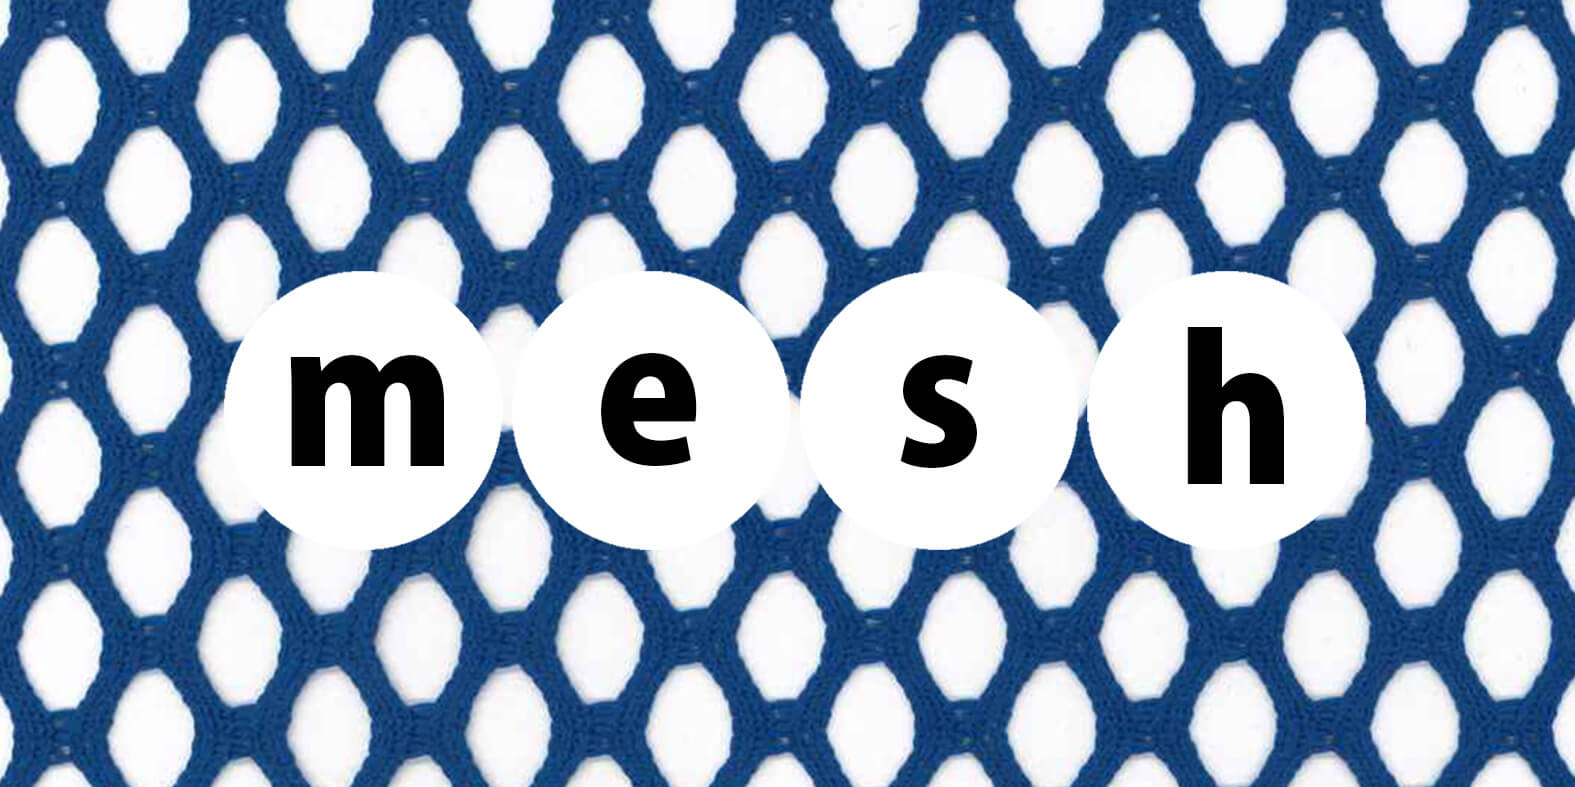 mesh-fabric